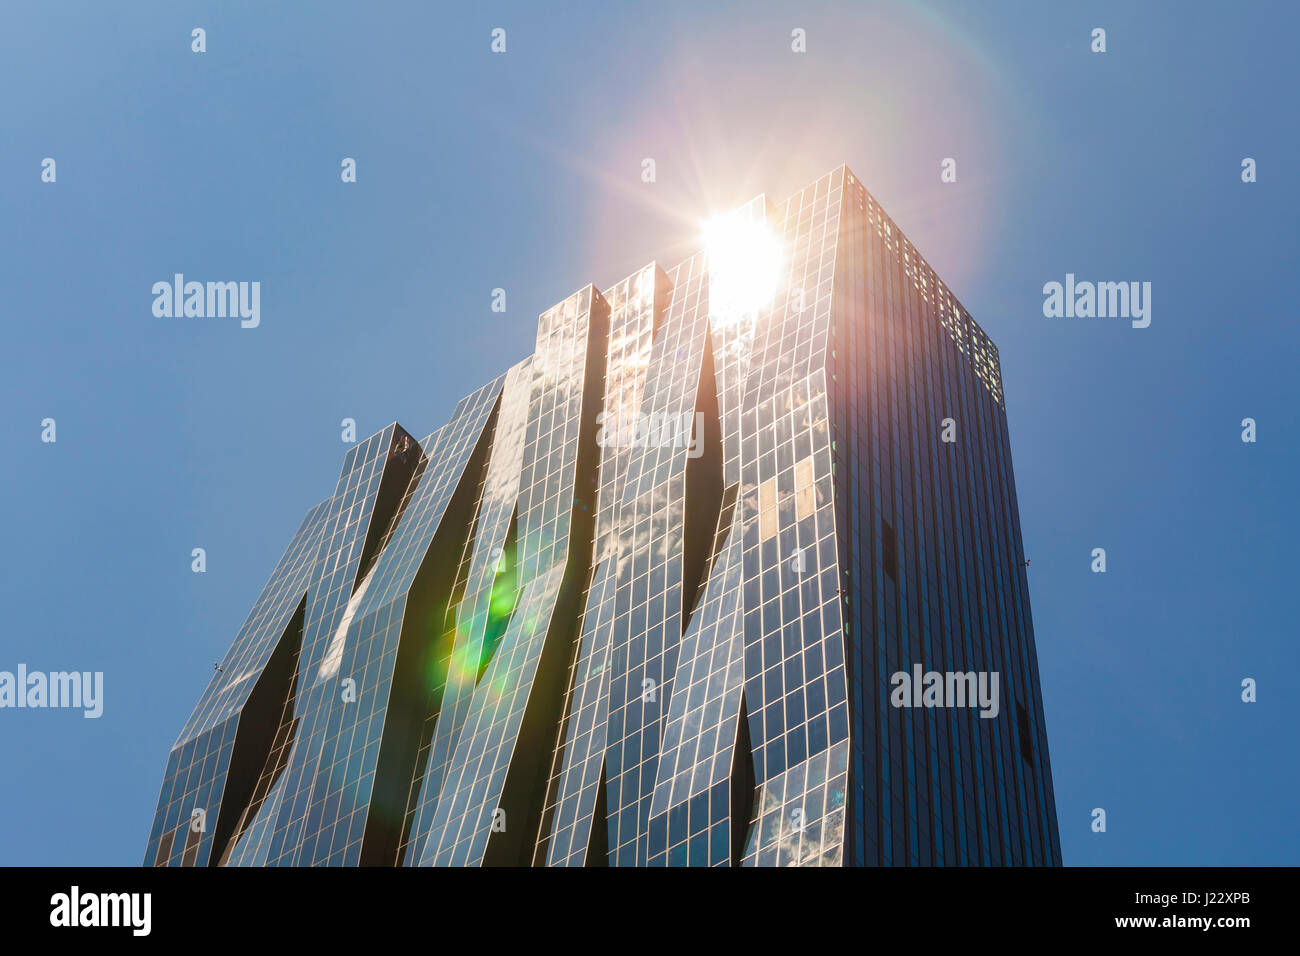 Österreich, Wien, Stadtteil Donau City, torre DC 1, Fassade, Hochhaus Foto de stock